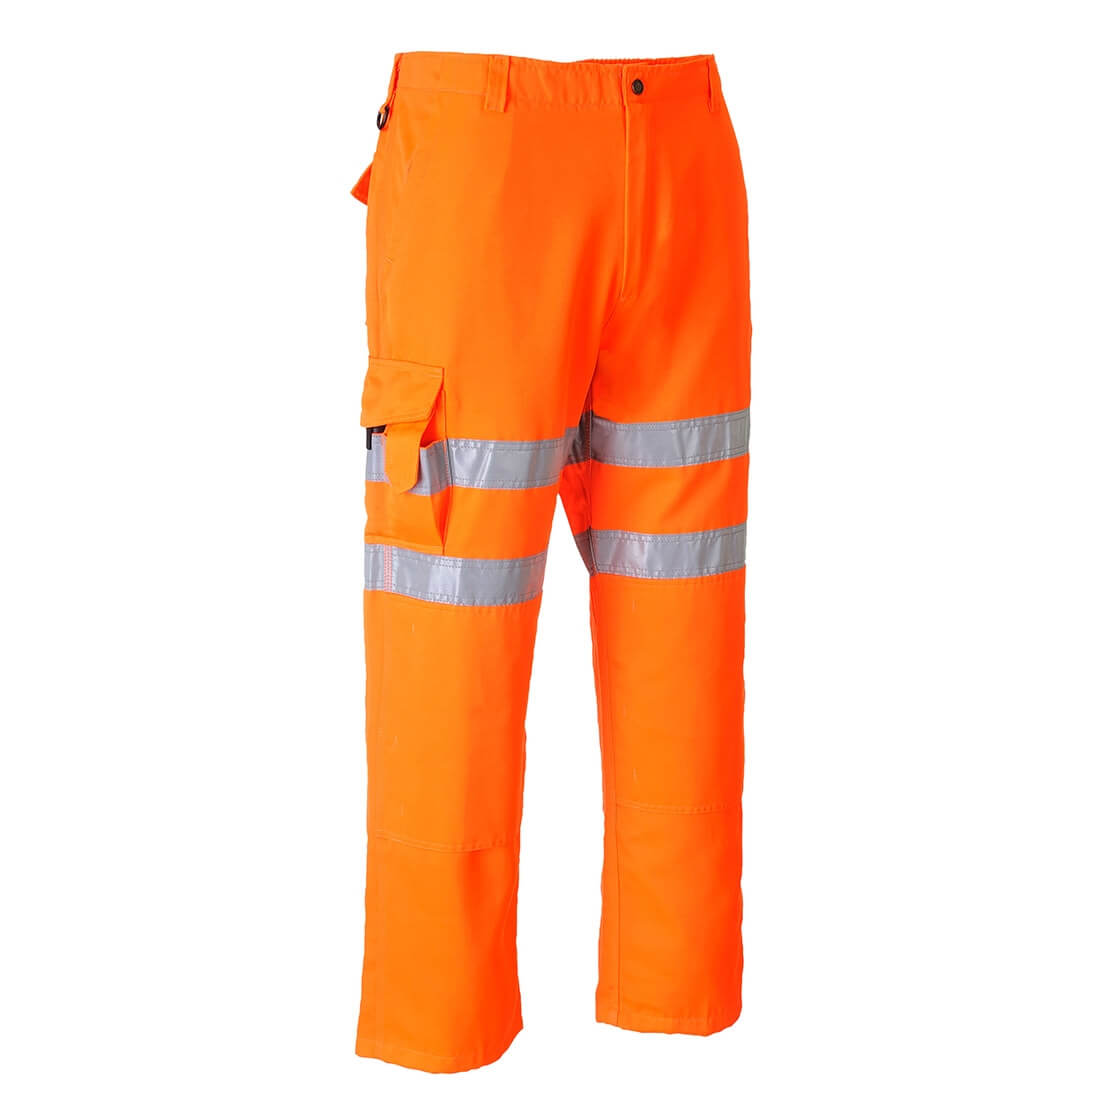 Pantalon Rail Combat - Imbracaminte de protectie